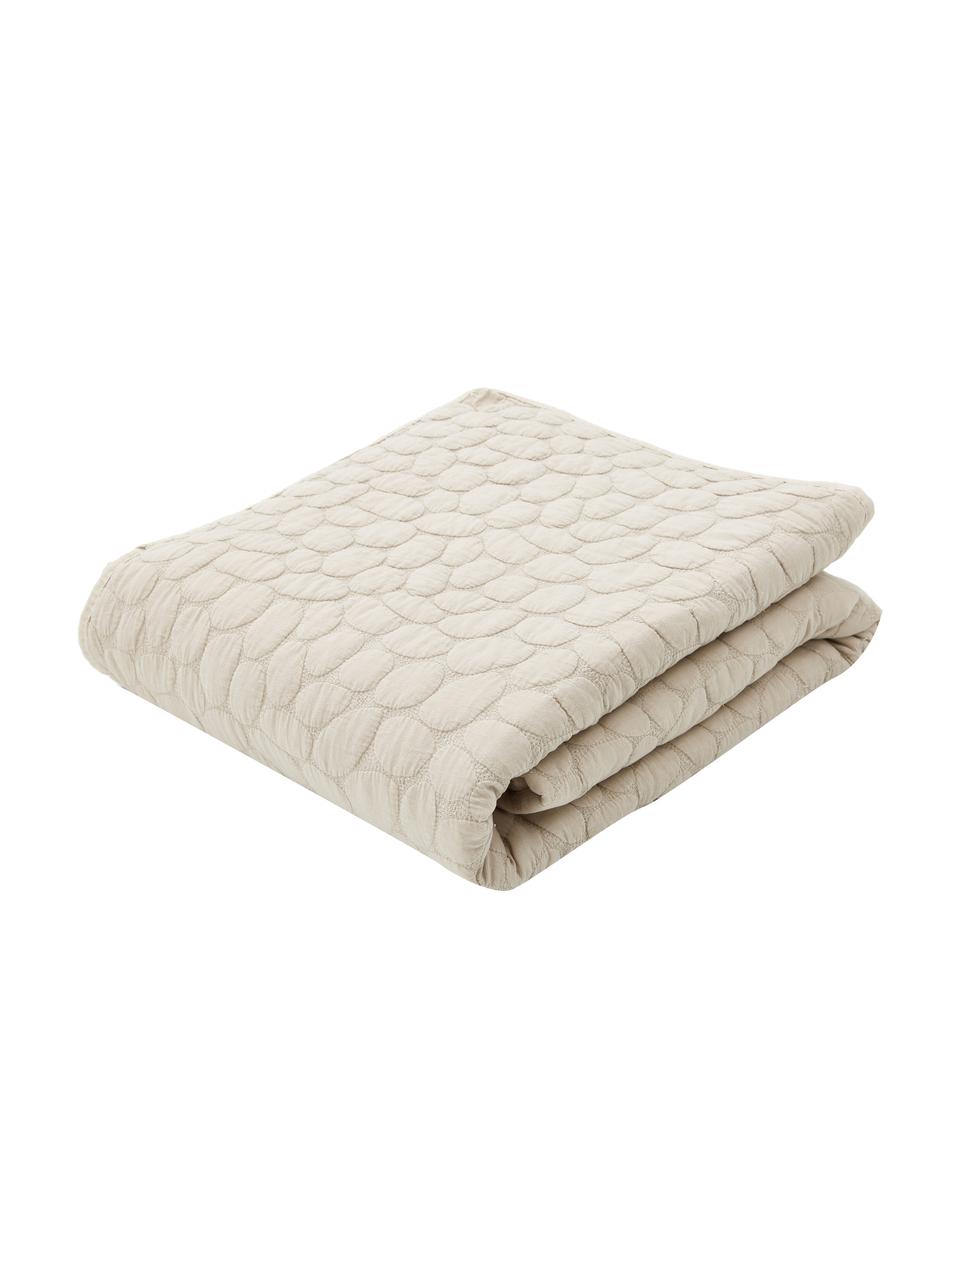 Gewatteerde bedsprei Mailey in beige, 100% polyester, Beige, B 150 x L 250 cm (voor bedden tot 100 x 200)